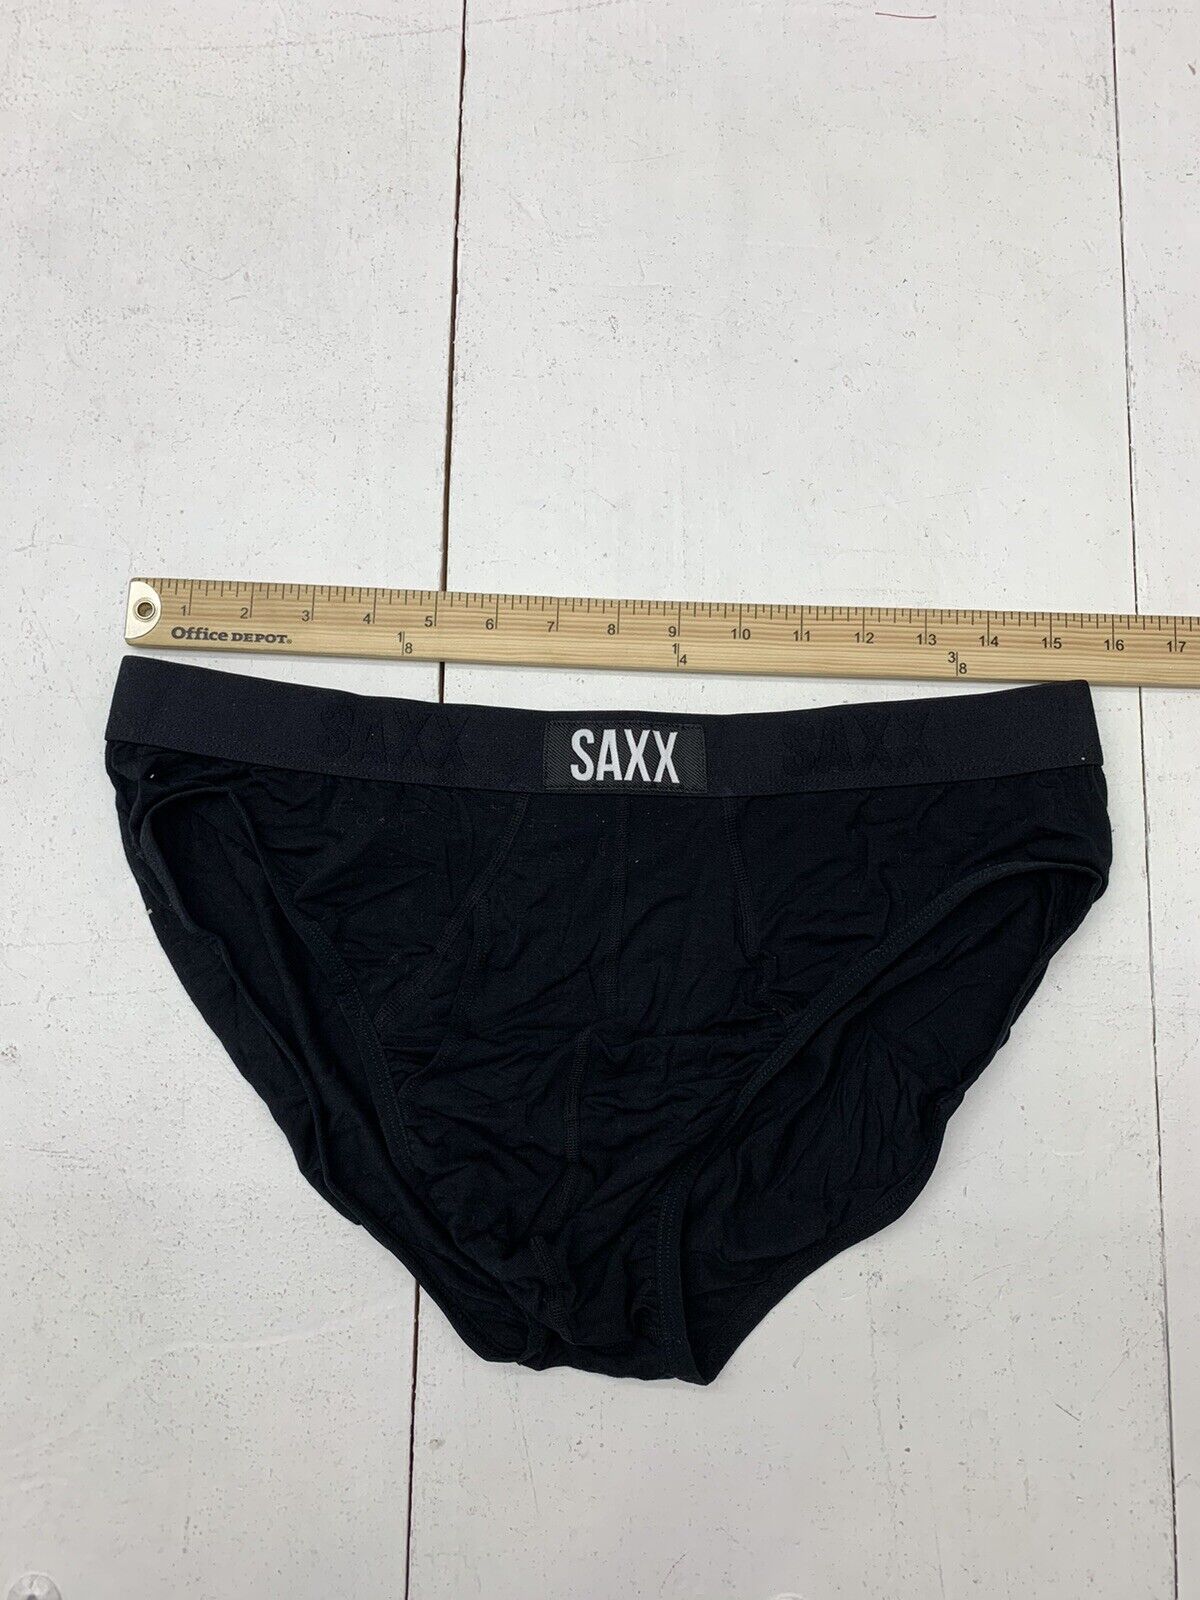 Saxx Mens Black Ultra Briefs Size XL - beyond exchange